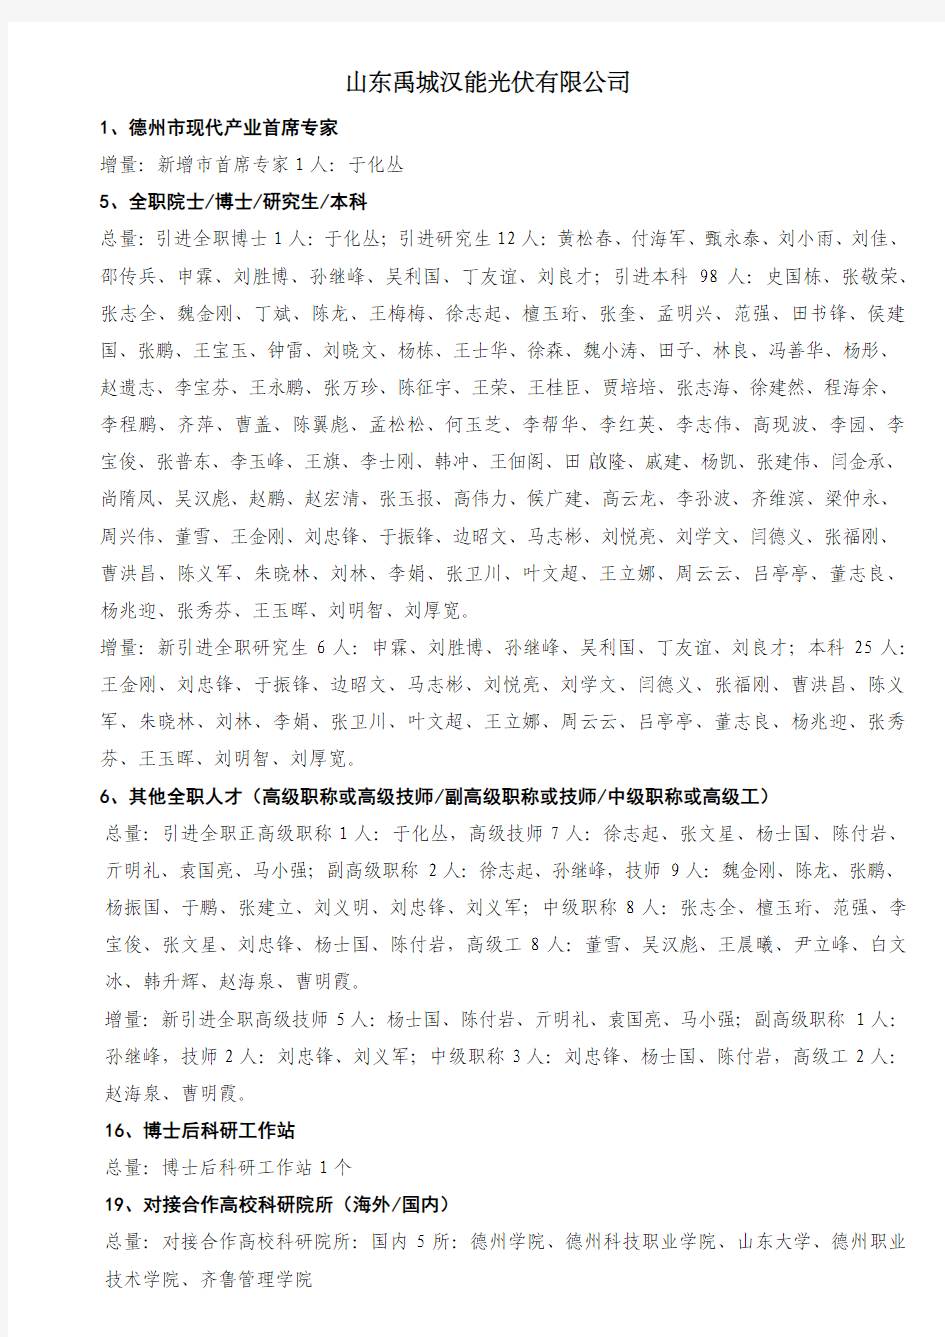 汉能-2013年企业人才工作考核表(20131224A)